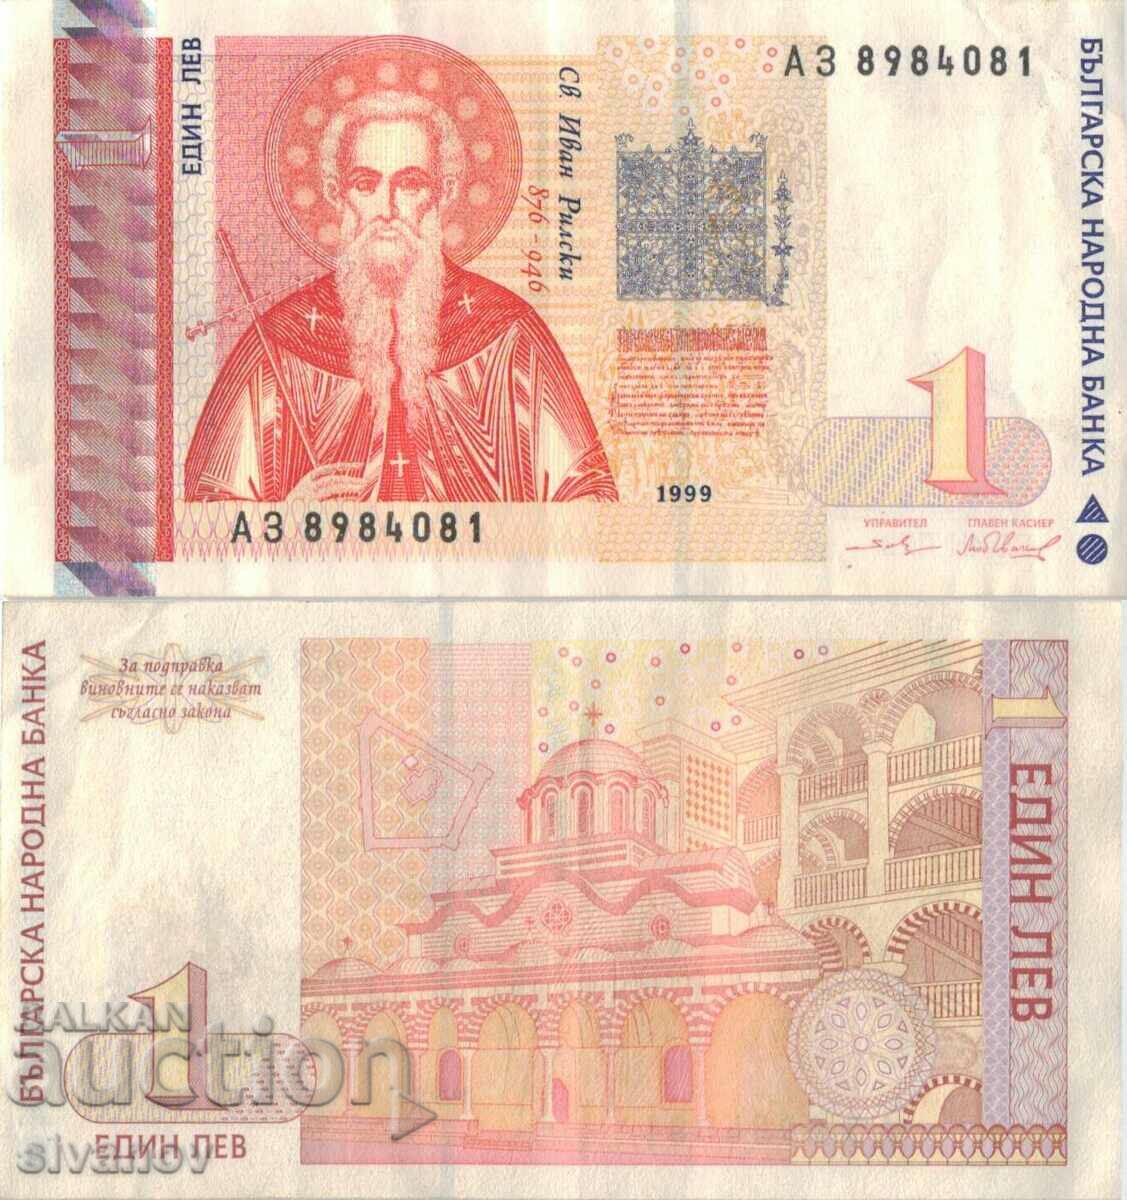 Βουλγαρία 1 λεβ 1999 τραπεζογραμμάτιο #5347